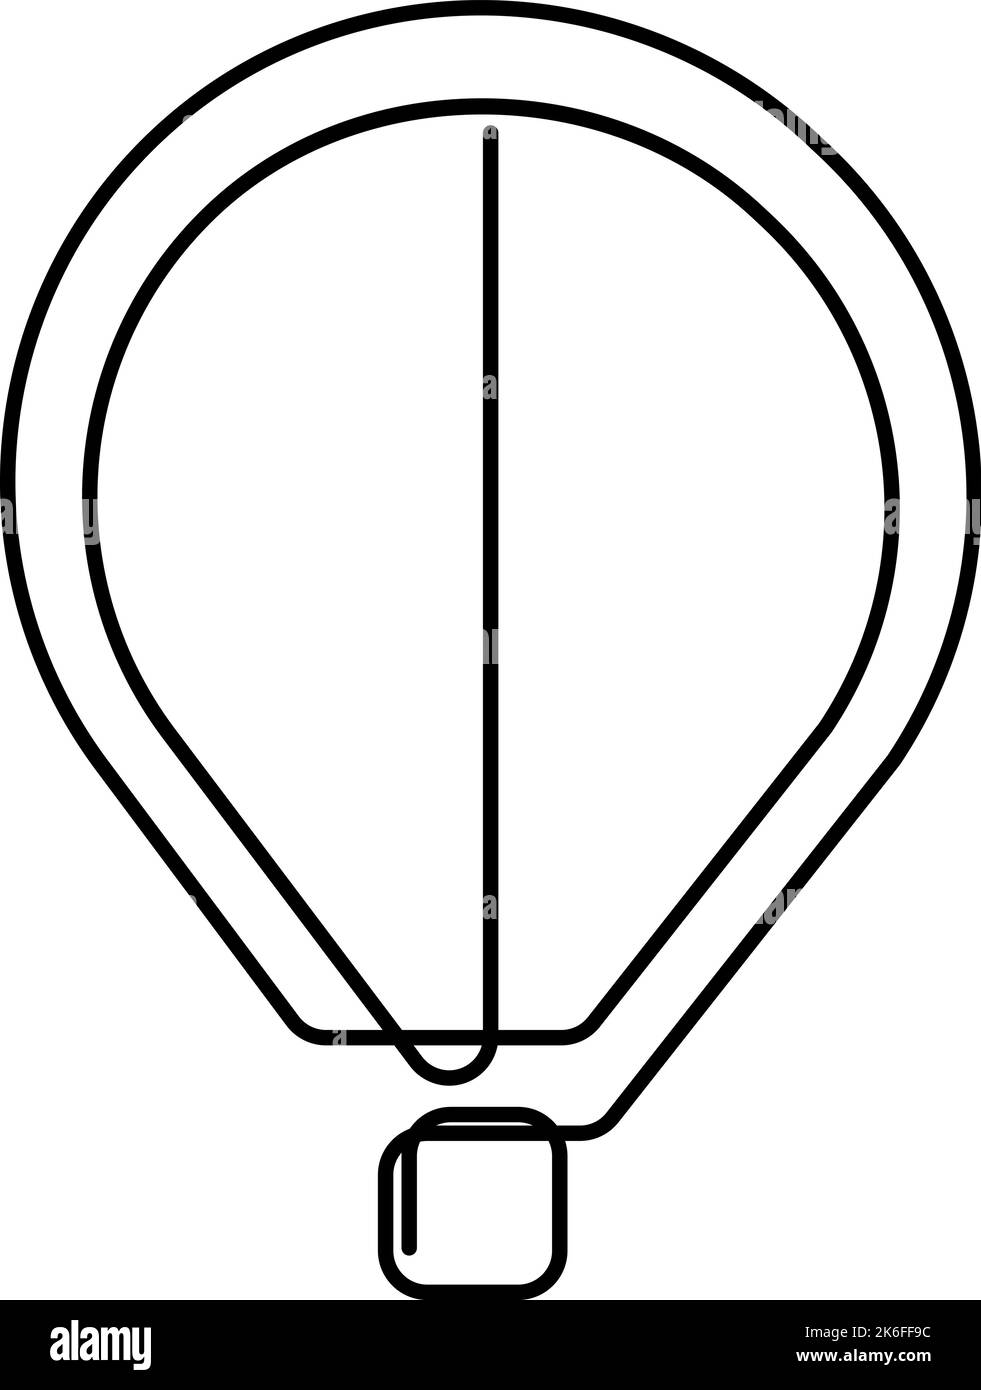 Disegno continuo di una linea del palloncino ad aria calda. Illustrazione vettoriale Illustrazione Vettoriale